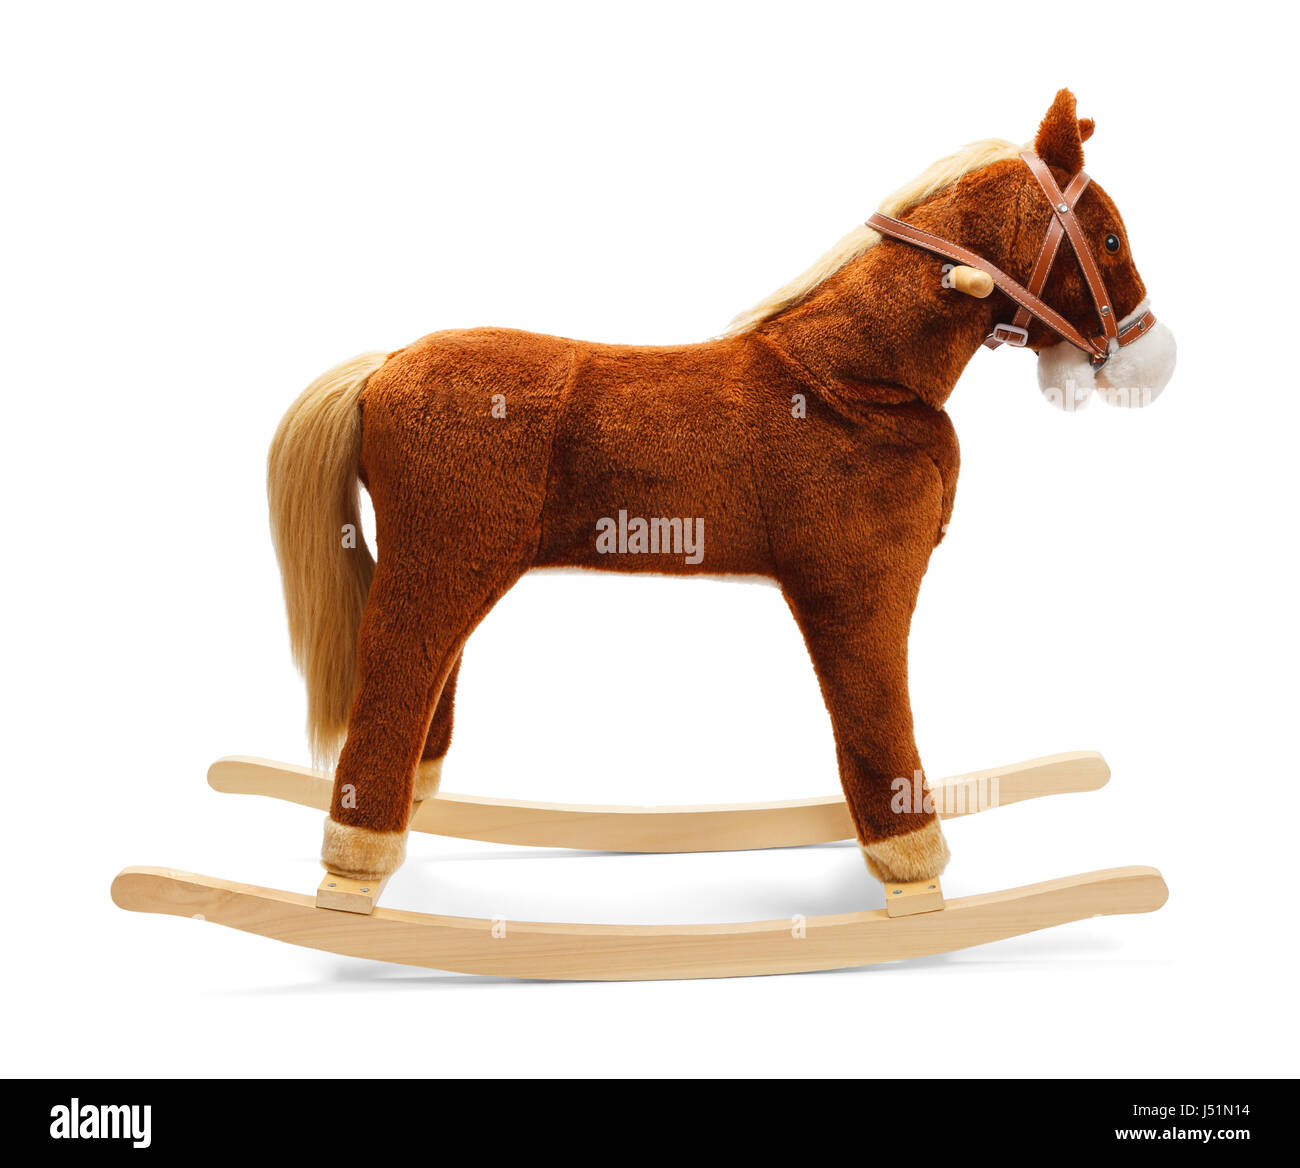 Toy Rocking Horse Isolated on White Background. Stock Photo